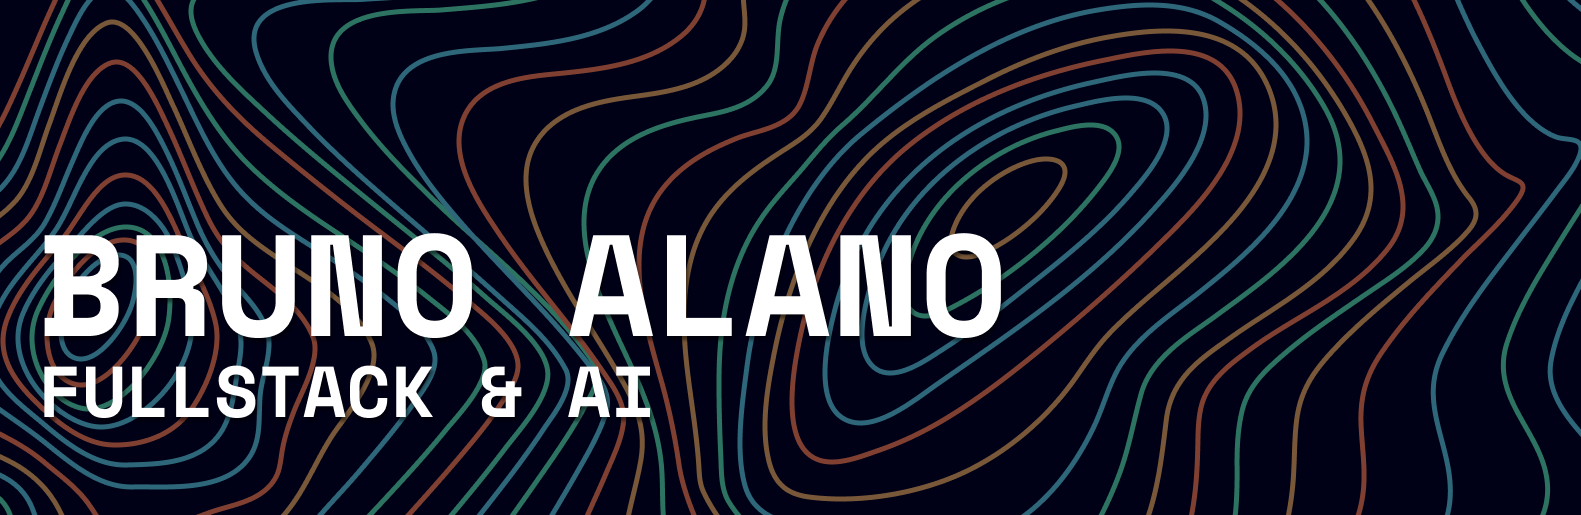 Bruno Alano - Full Stack Developer & AI Researcher